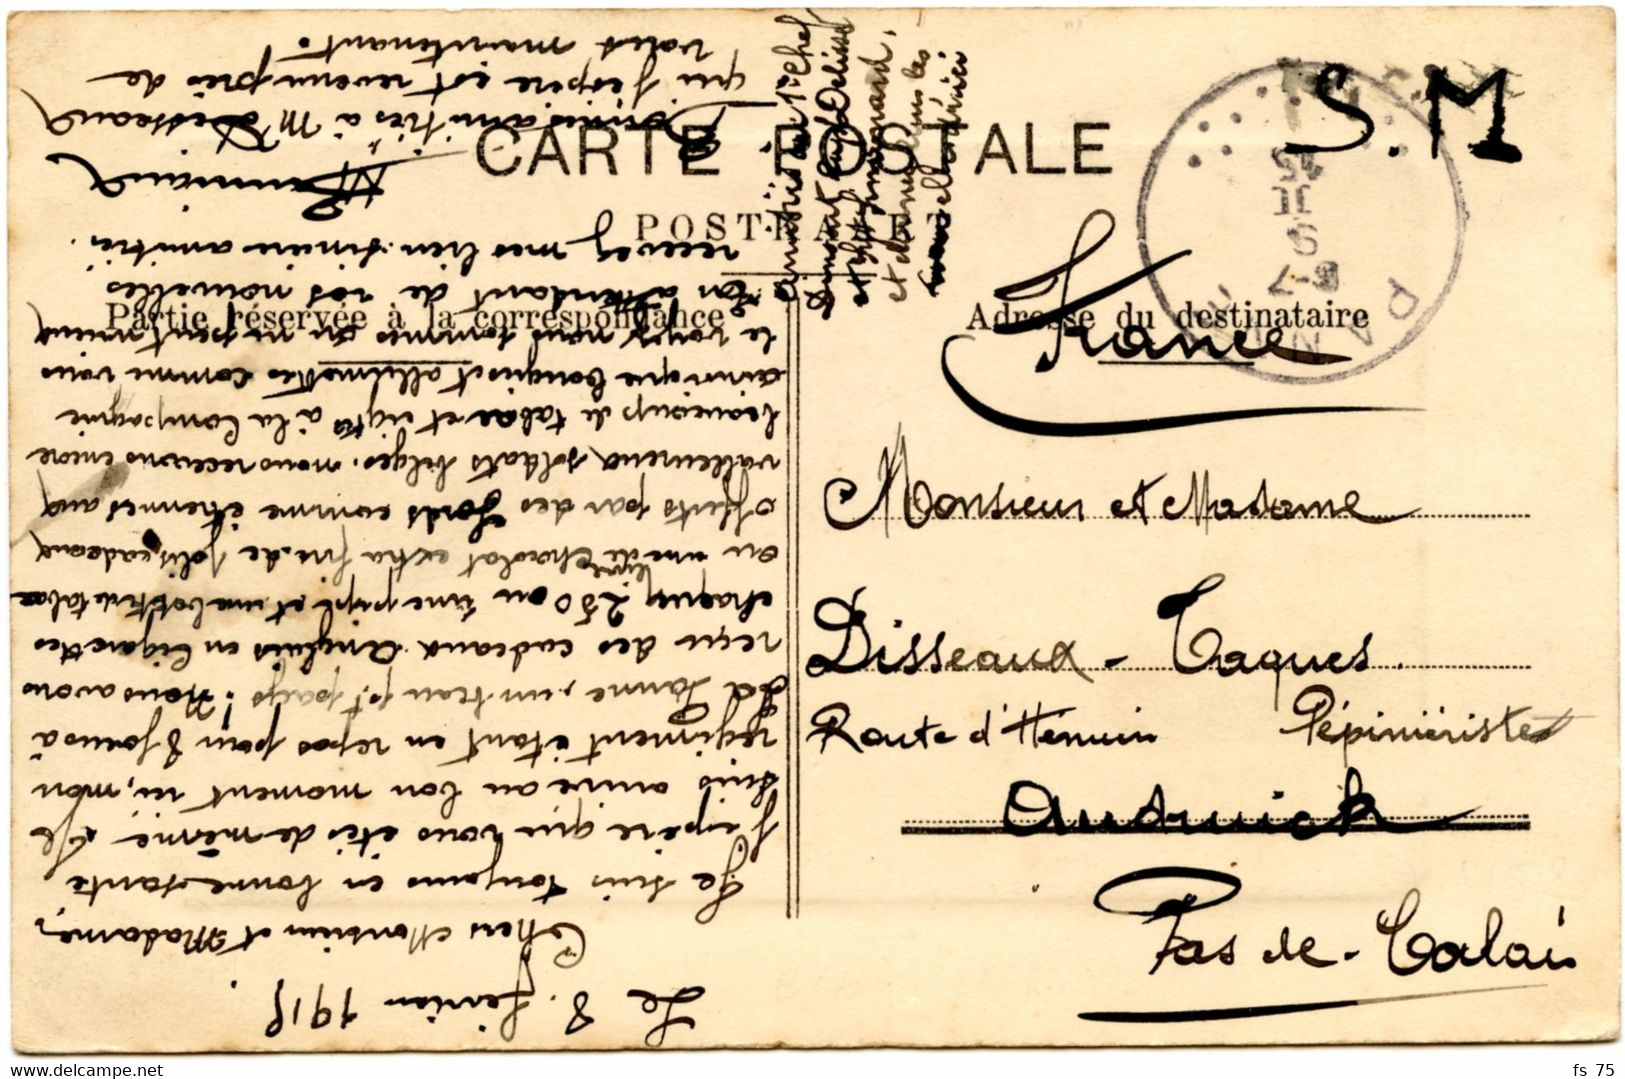 BELGIQUE - SIMPLE CERCLE PANNE SUR CARTE POSTALE EN FRANCHISE, 1915 - Niet-bezet Gebied